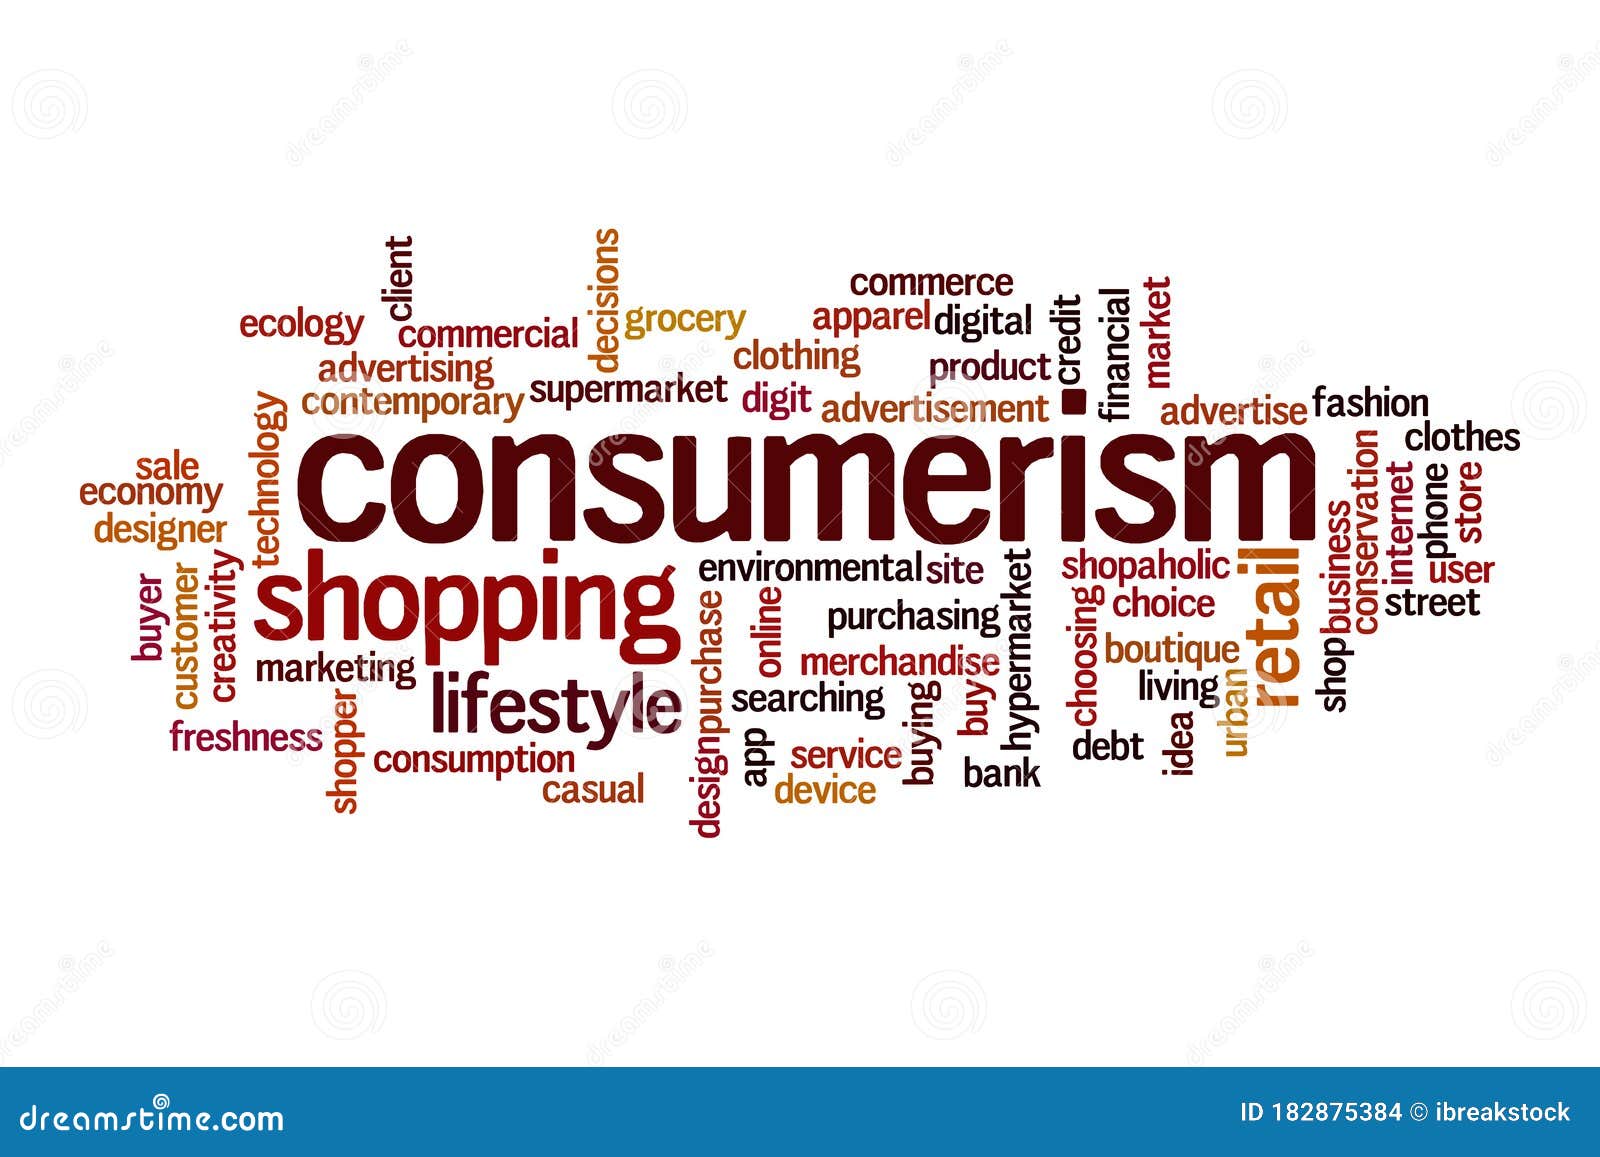 consumerism images